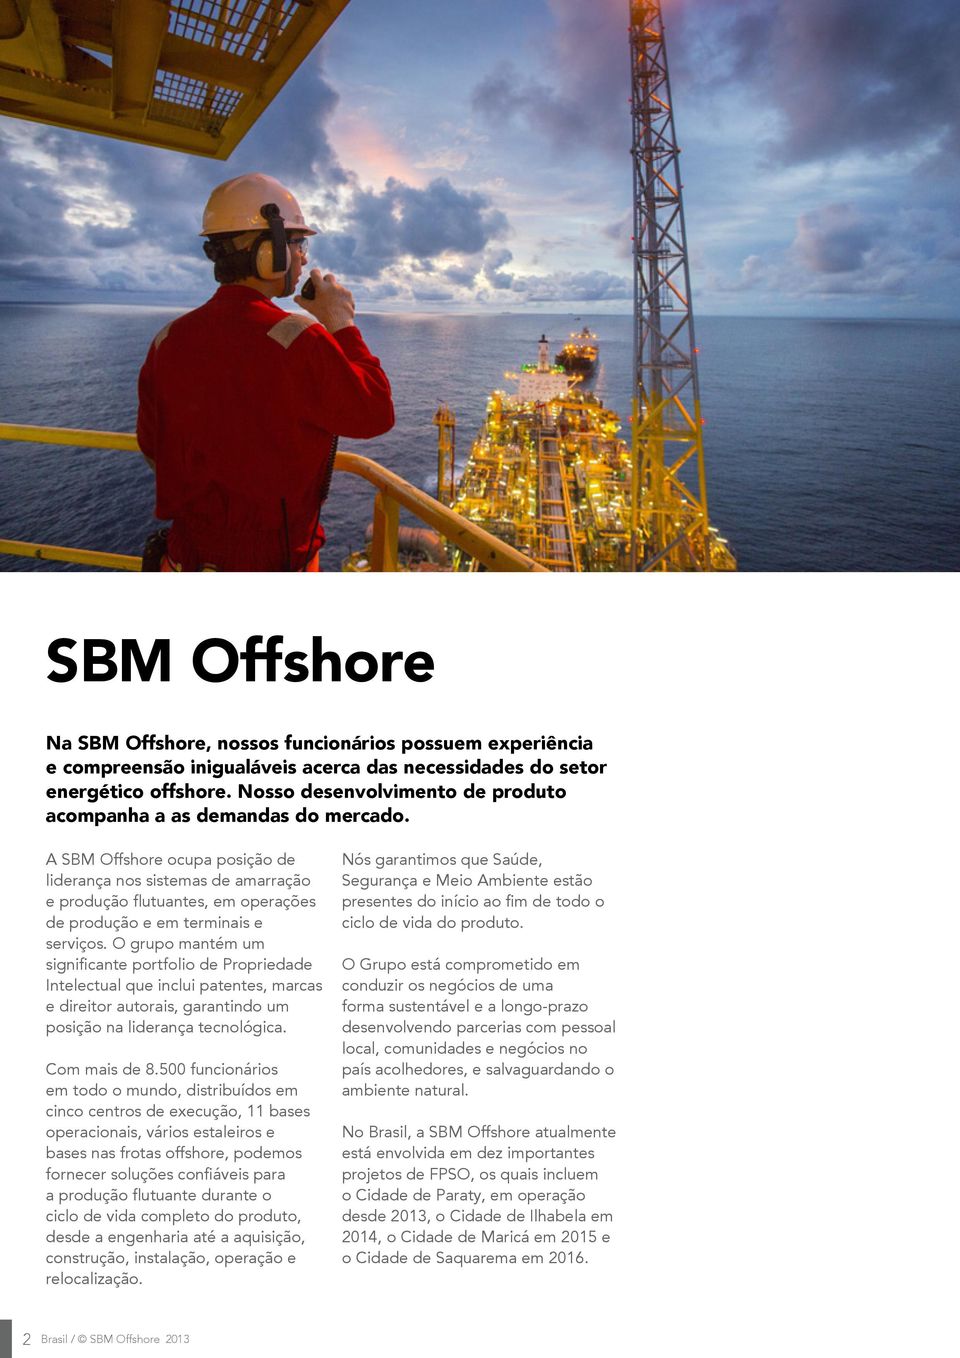 A SBM Offshore ocupa posição de liderança nos sistemas de amarração e produção flutuantes, em operações de produção e em terminais e serviços.